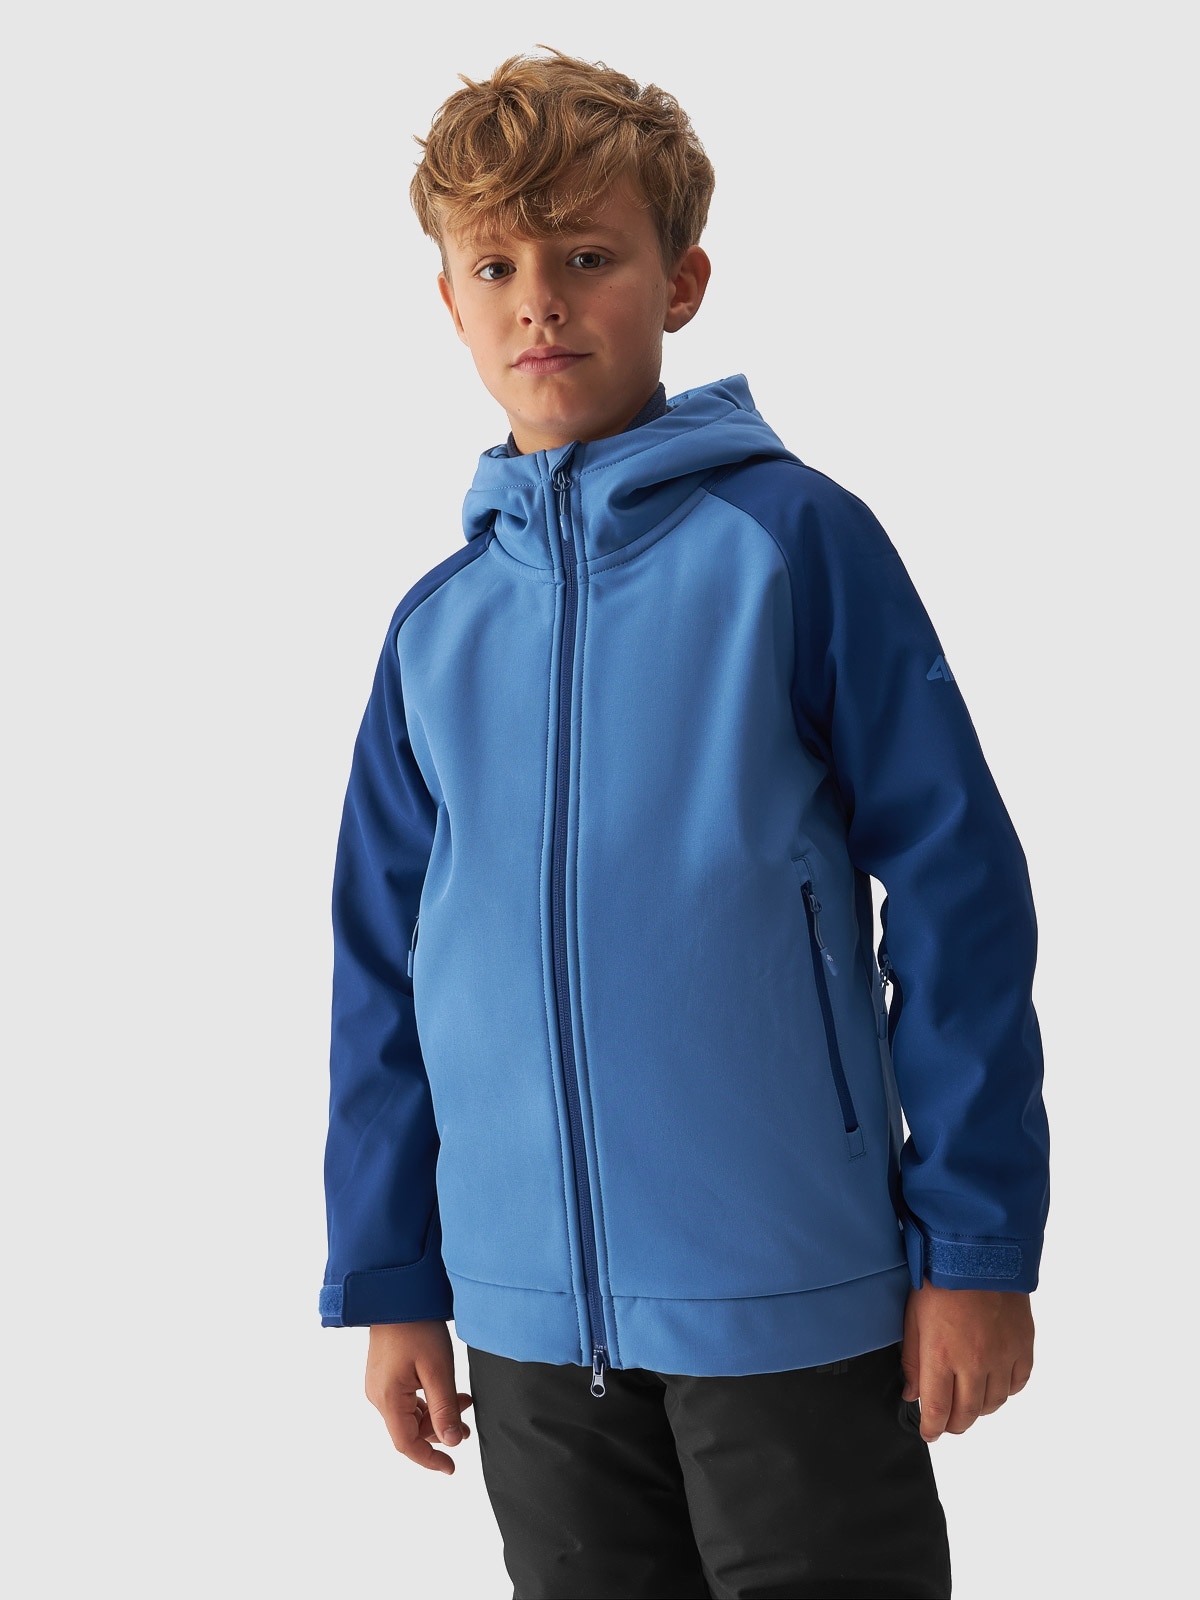 Chlapecká softshellová větruodolná lyžařská bunda membrána 5000 - modrá